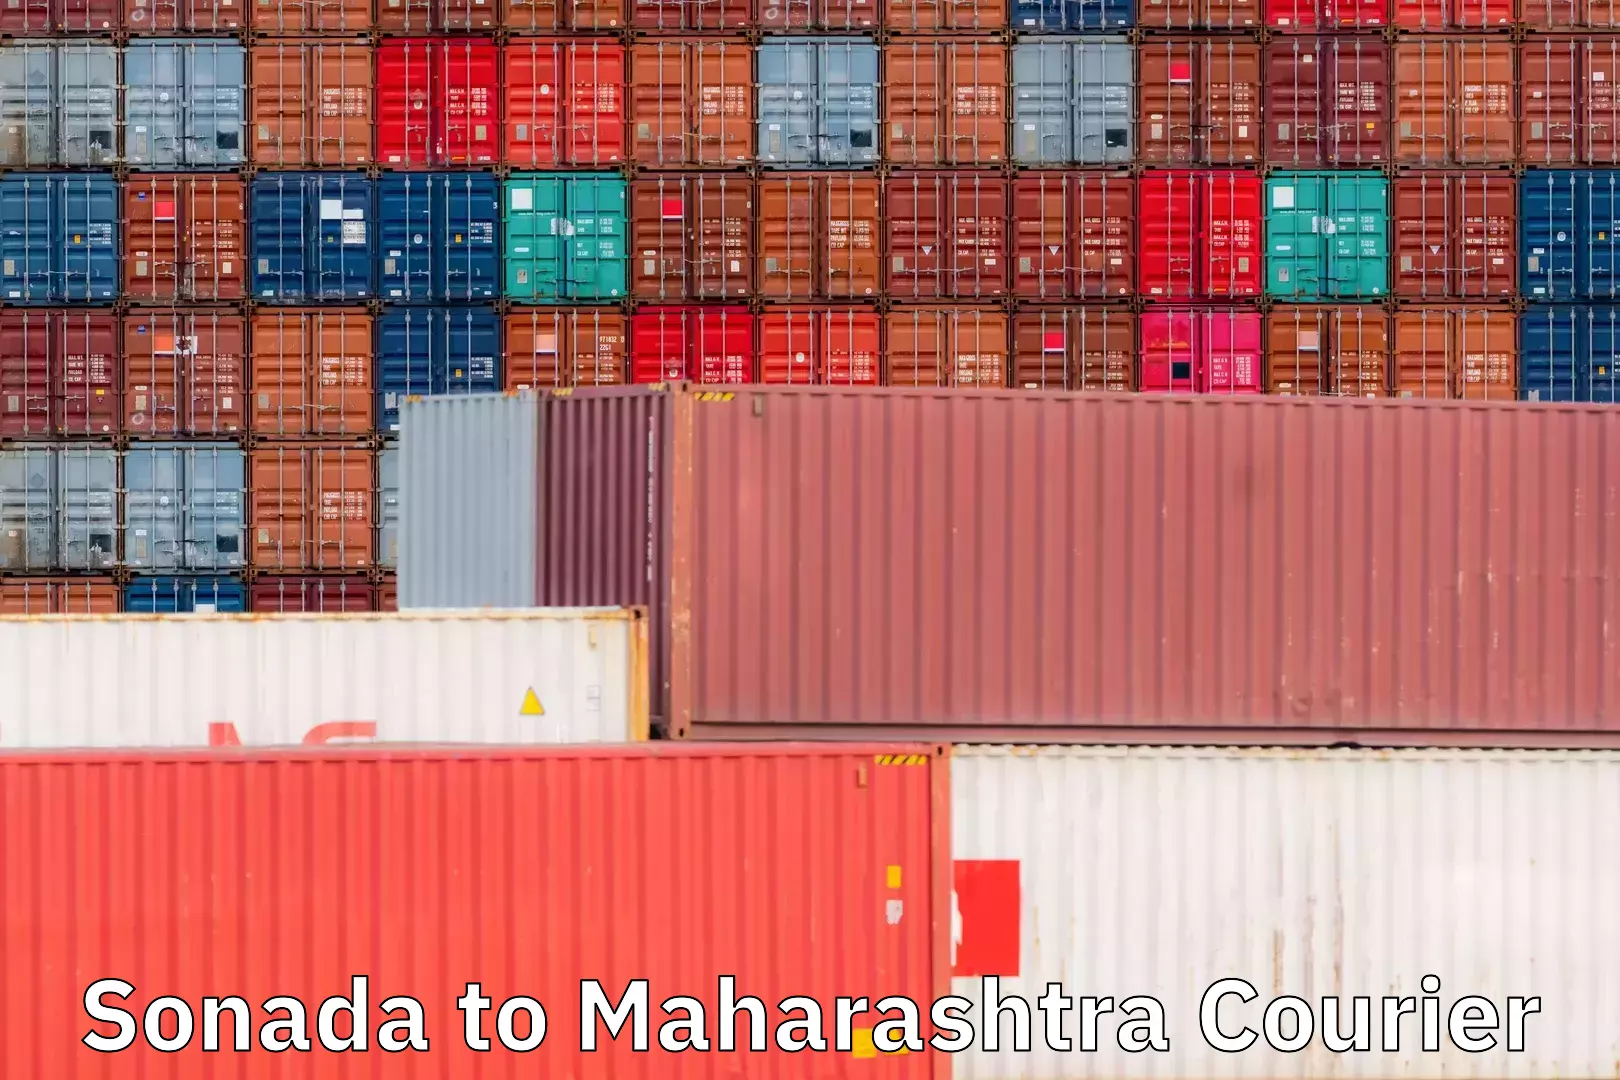 Efficient shipping operations Sonada to Maharashtra